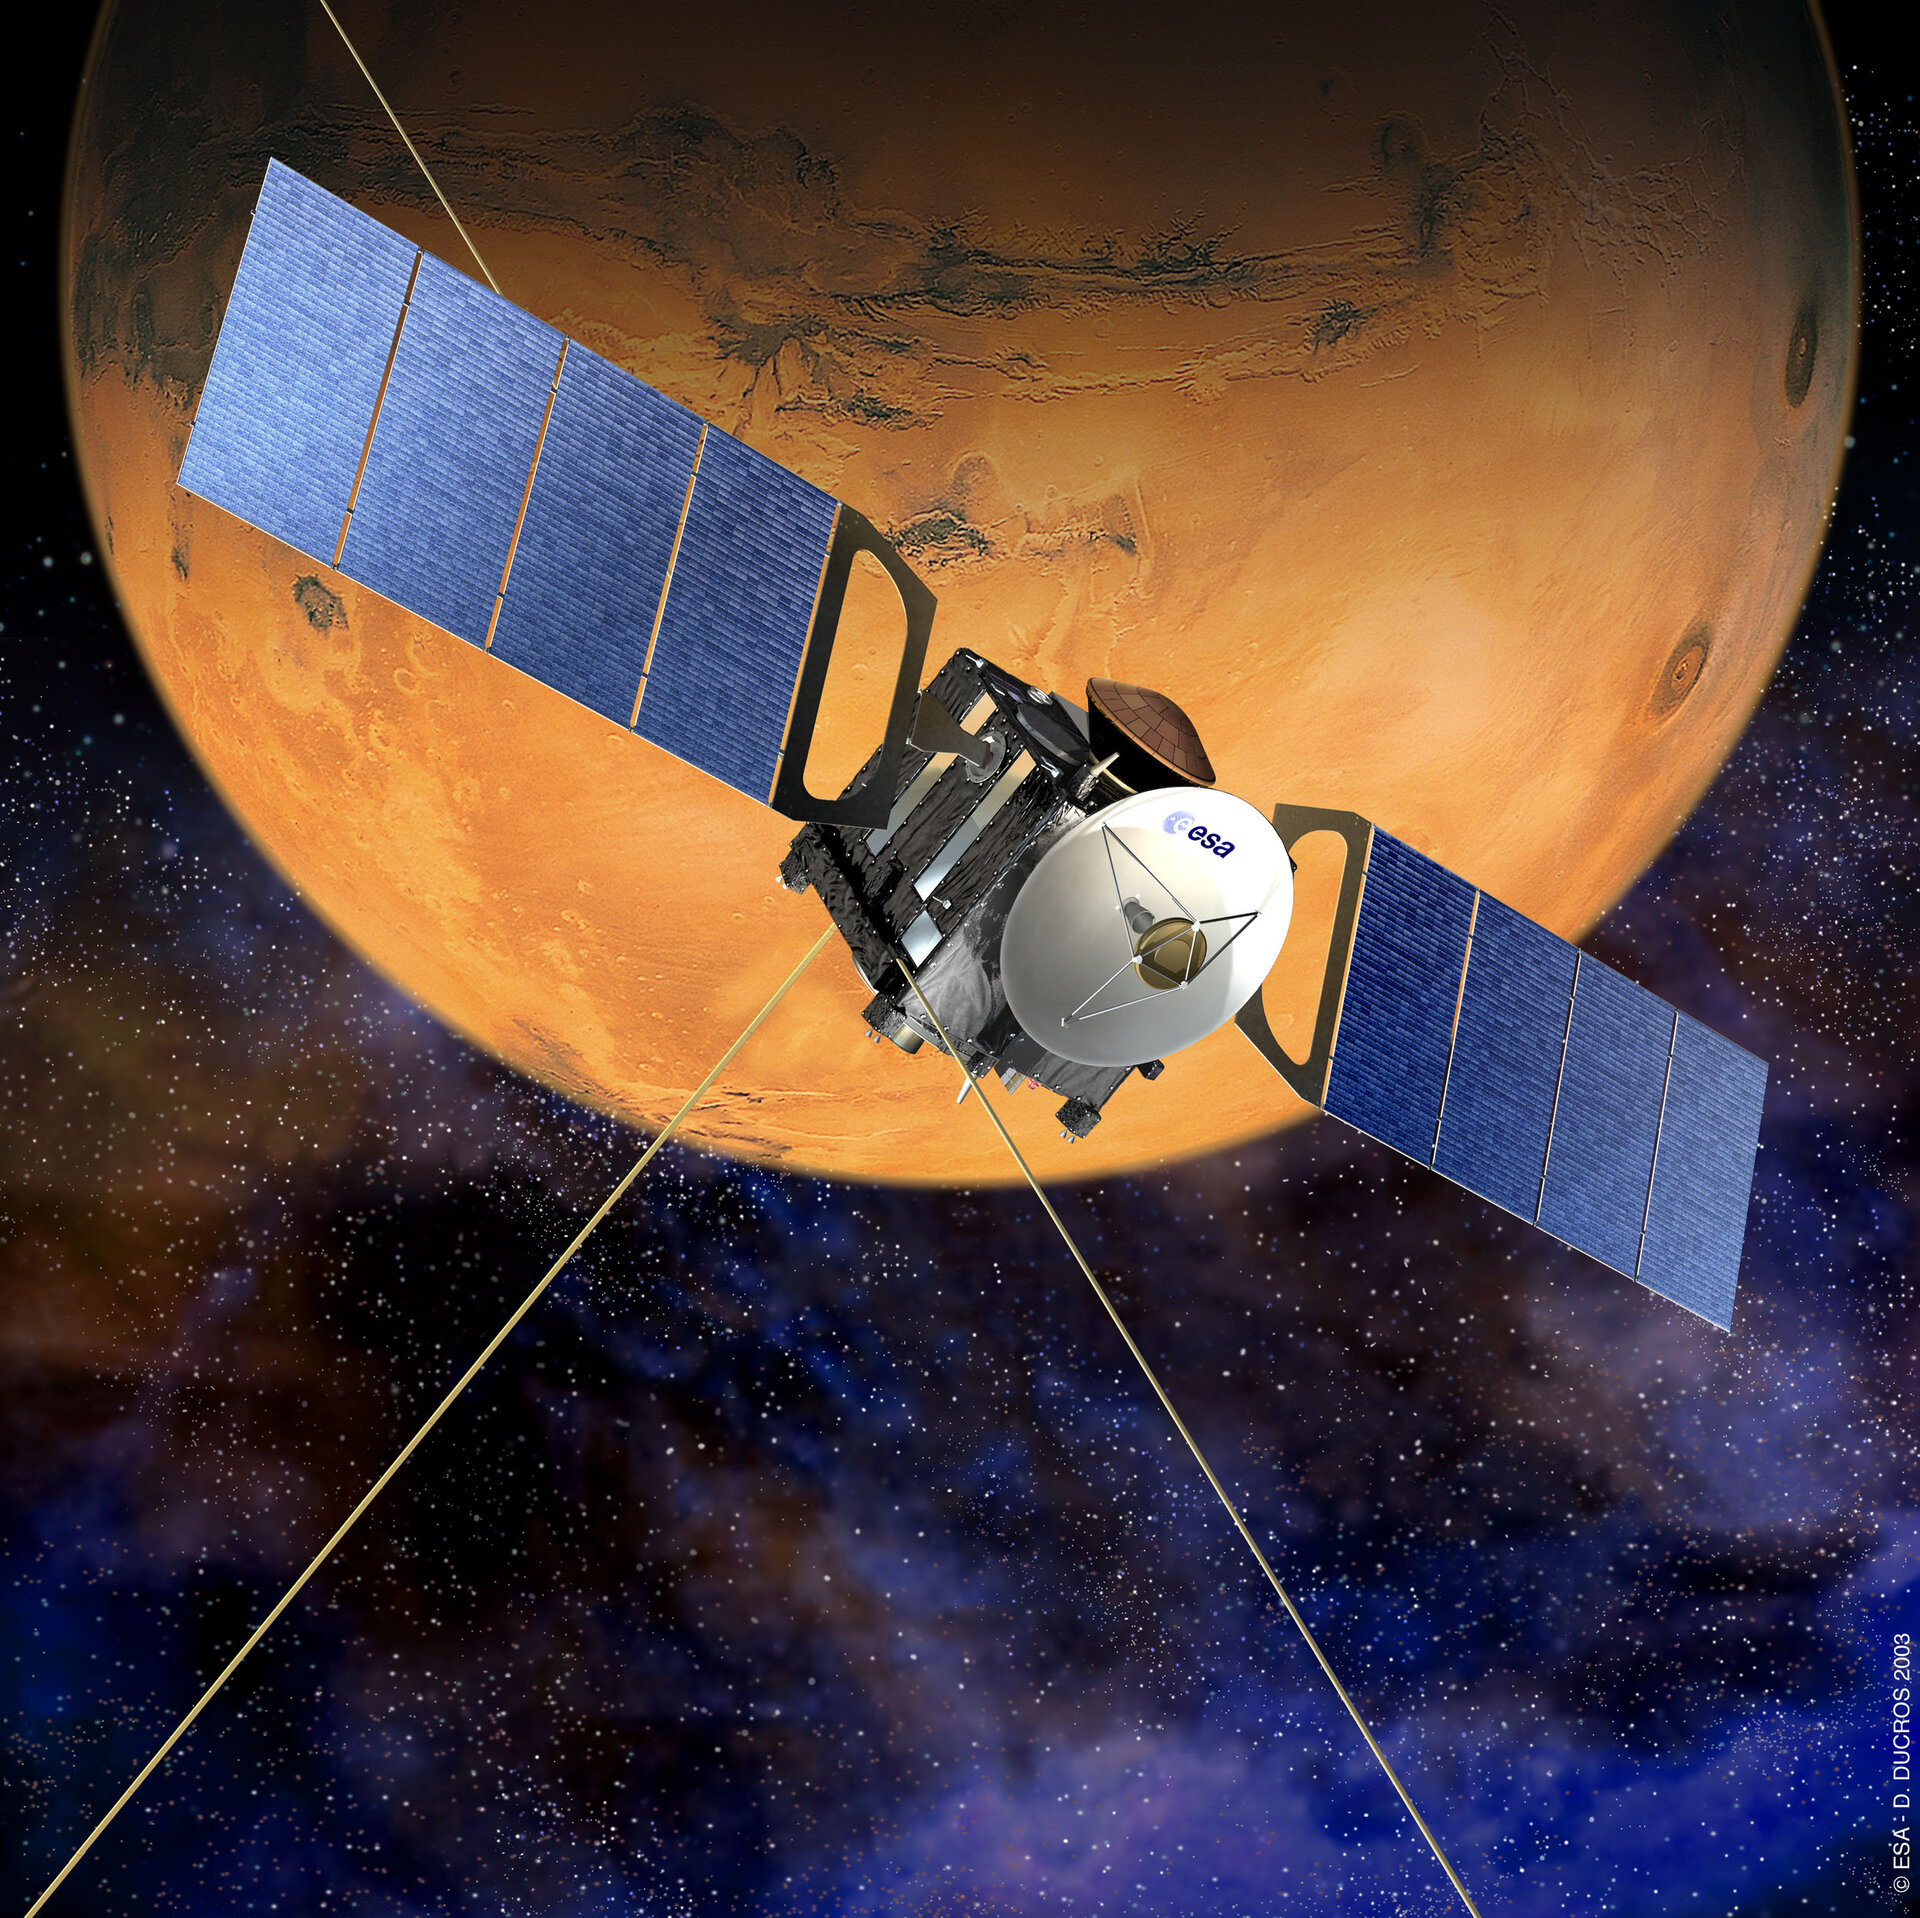 Este orbitador transmitió datos de siete misiones diferentes a Marte